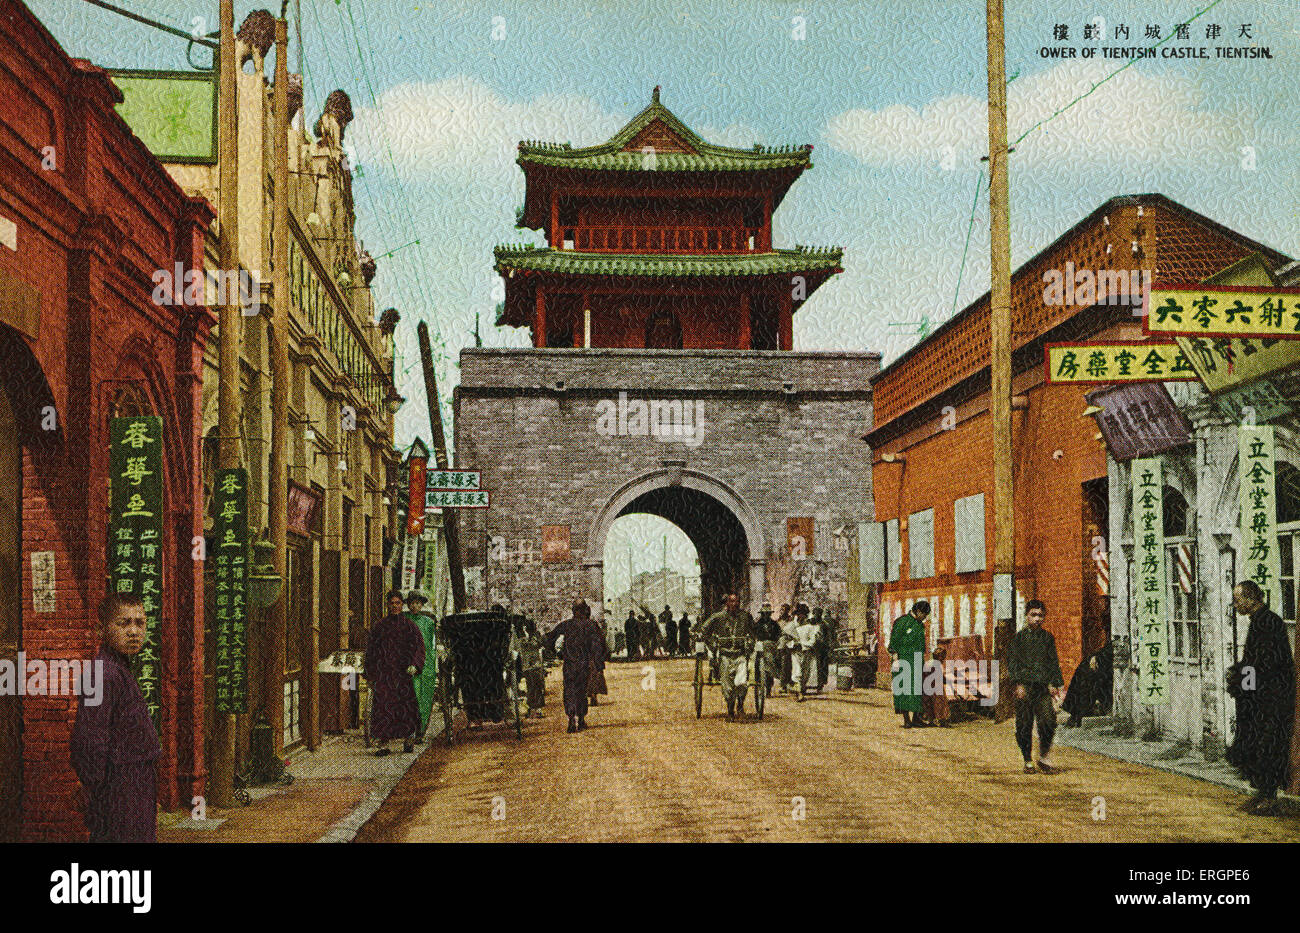 Tour de château, Tientsin / Tianjin, Chine Tientsin. Scène de rue. Banque D'Images